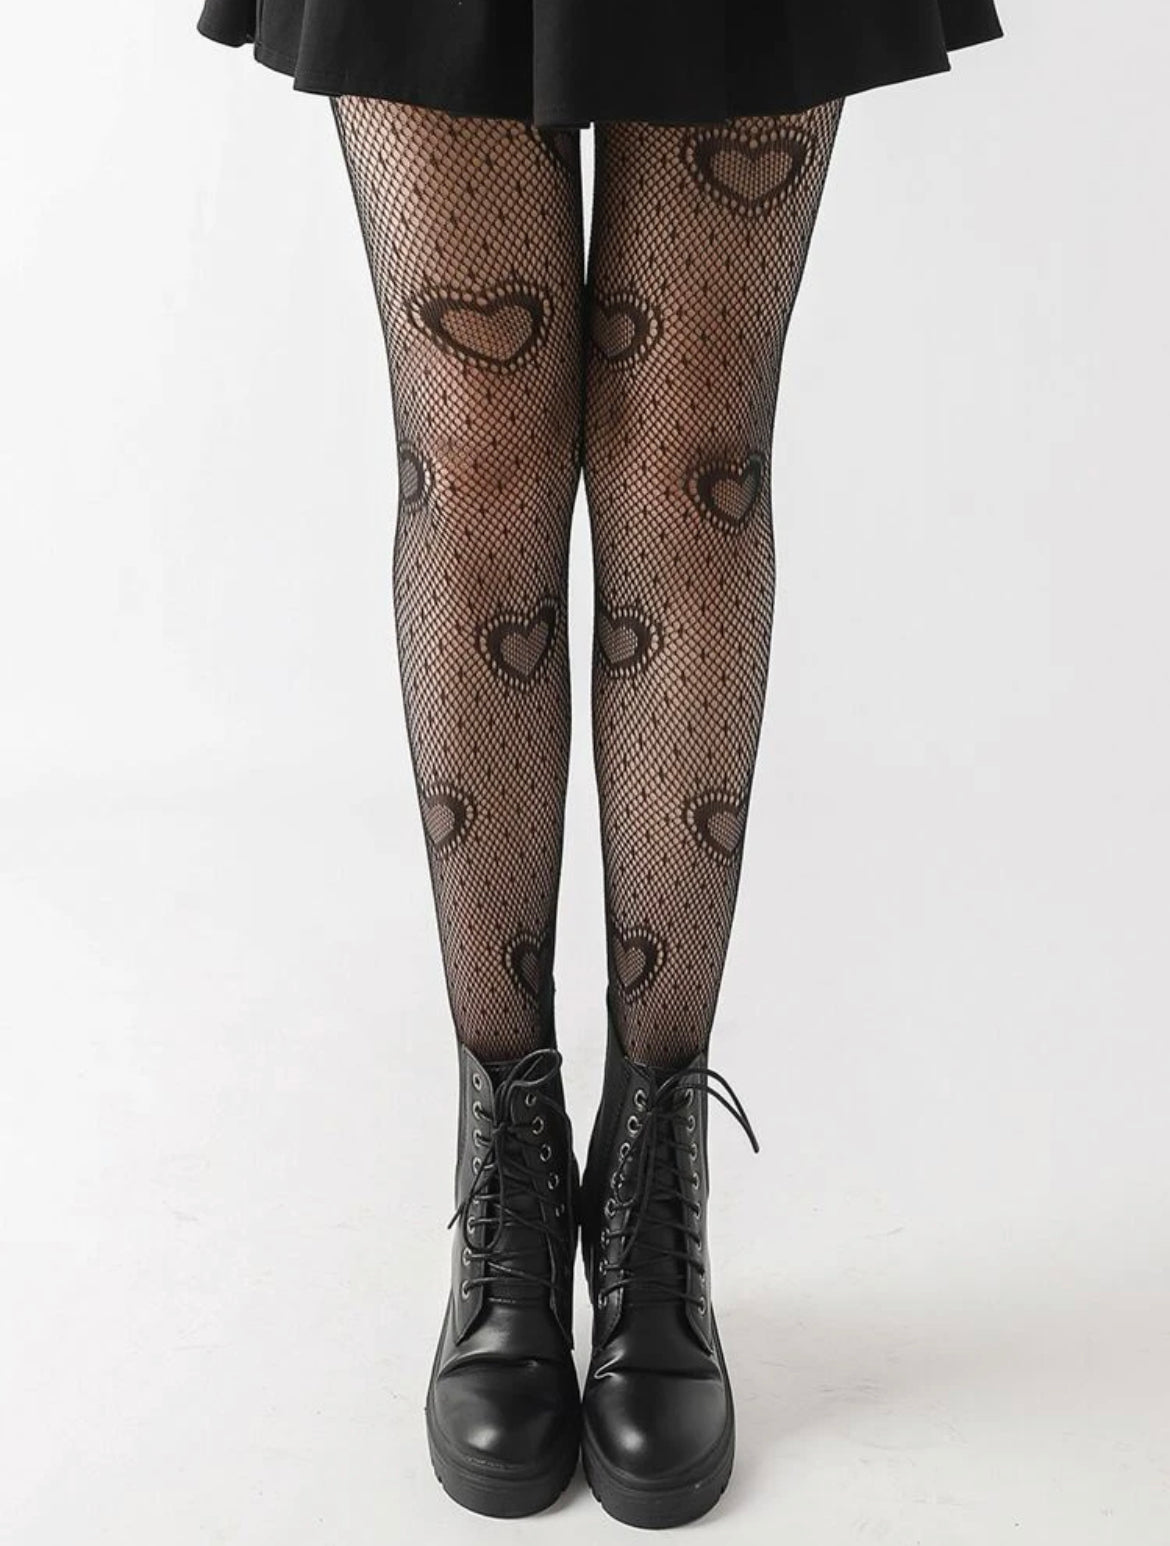 Fishnet heart stockings/heart leggings in black or white